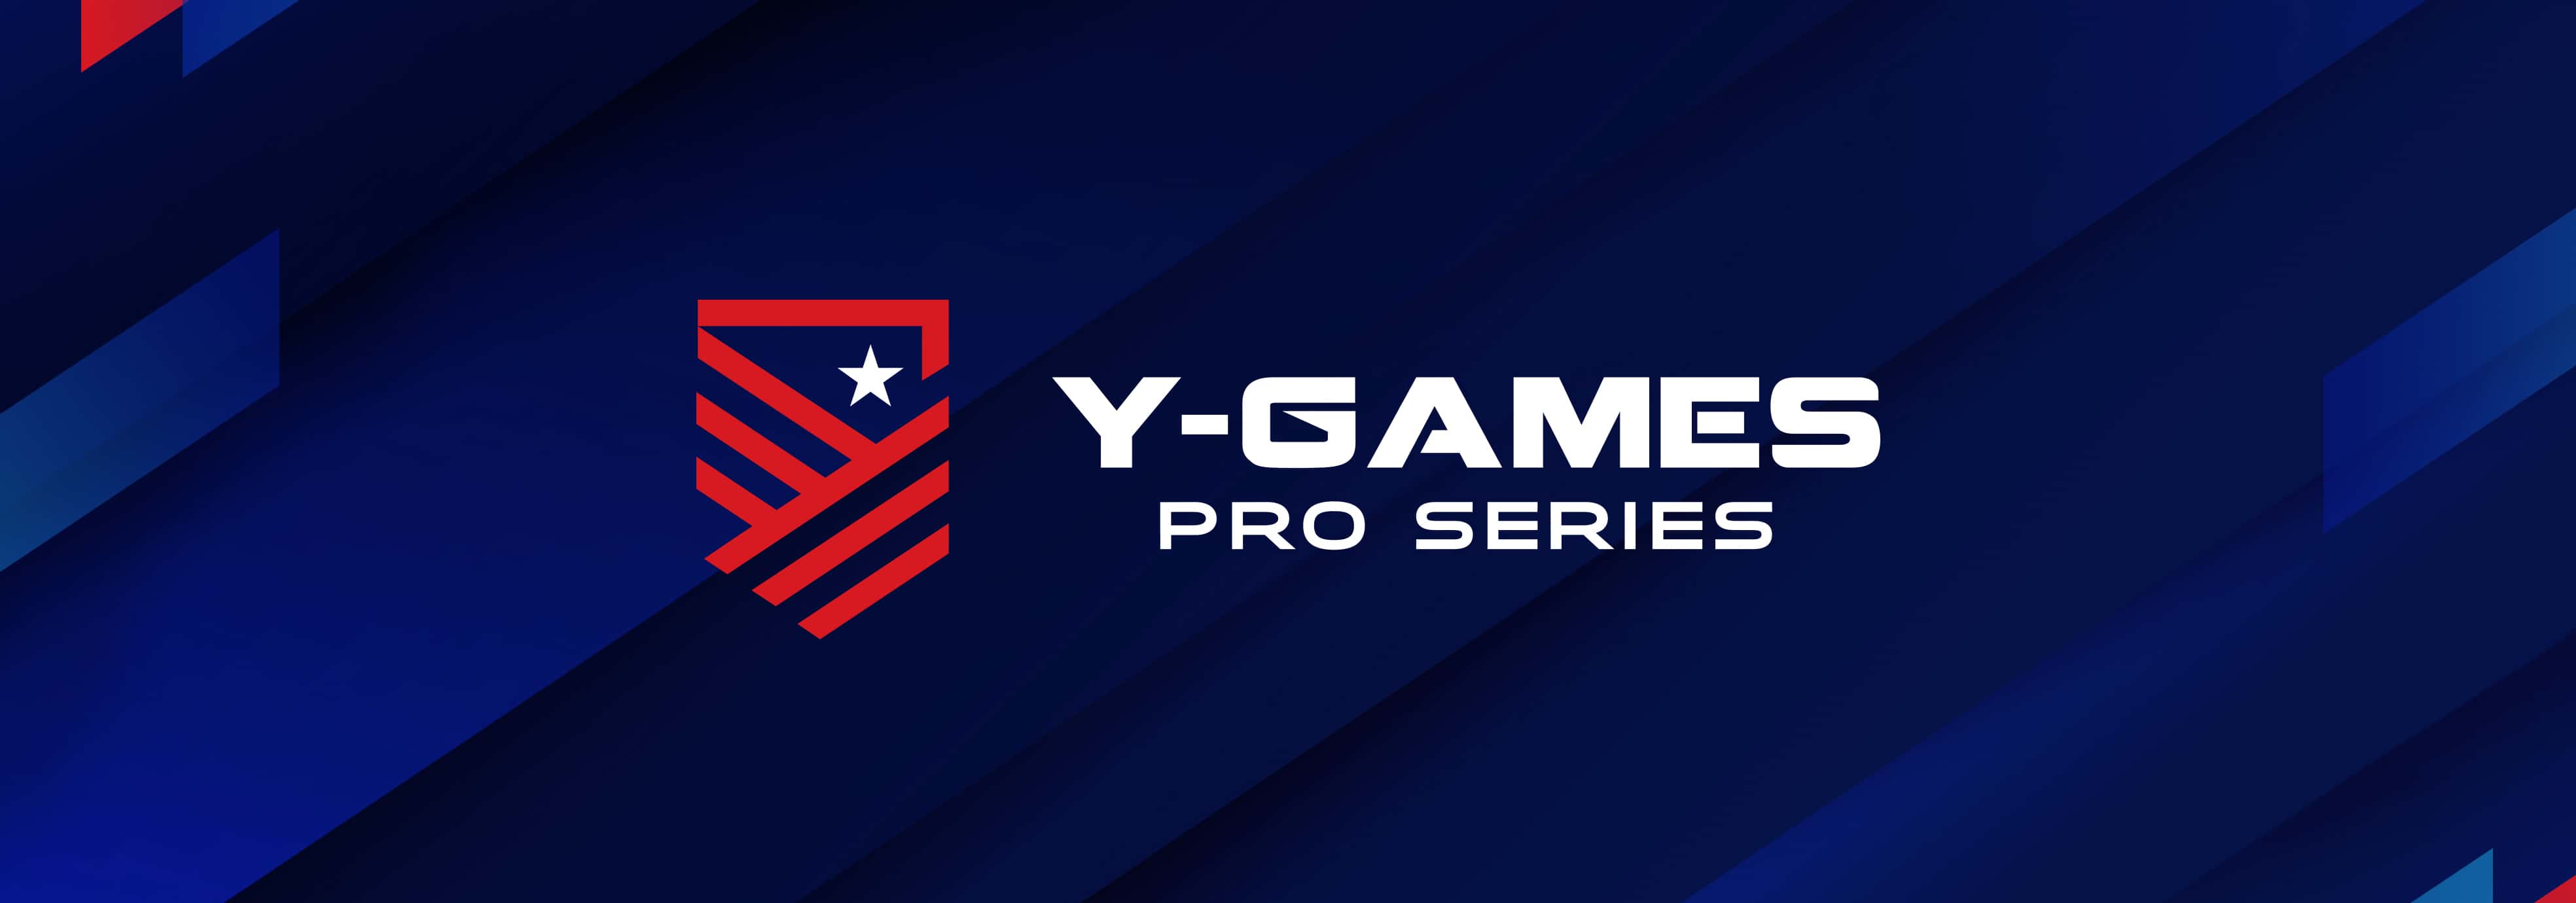 Y-Games PRO Series začíná úvodními zápasy během dnešního večera